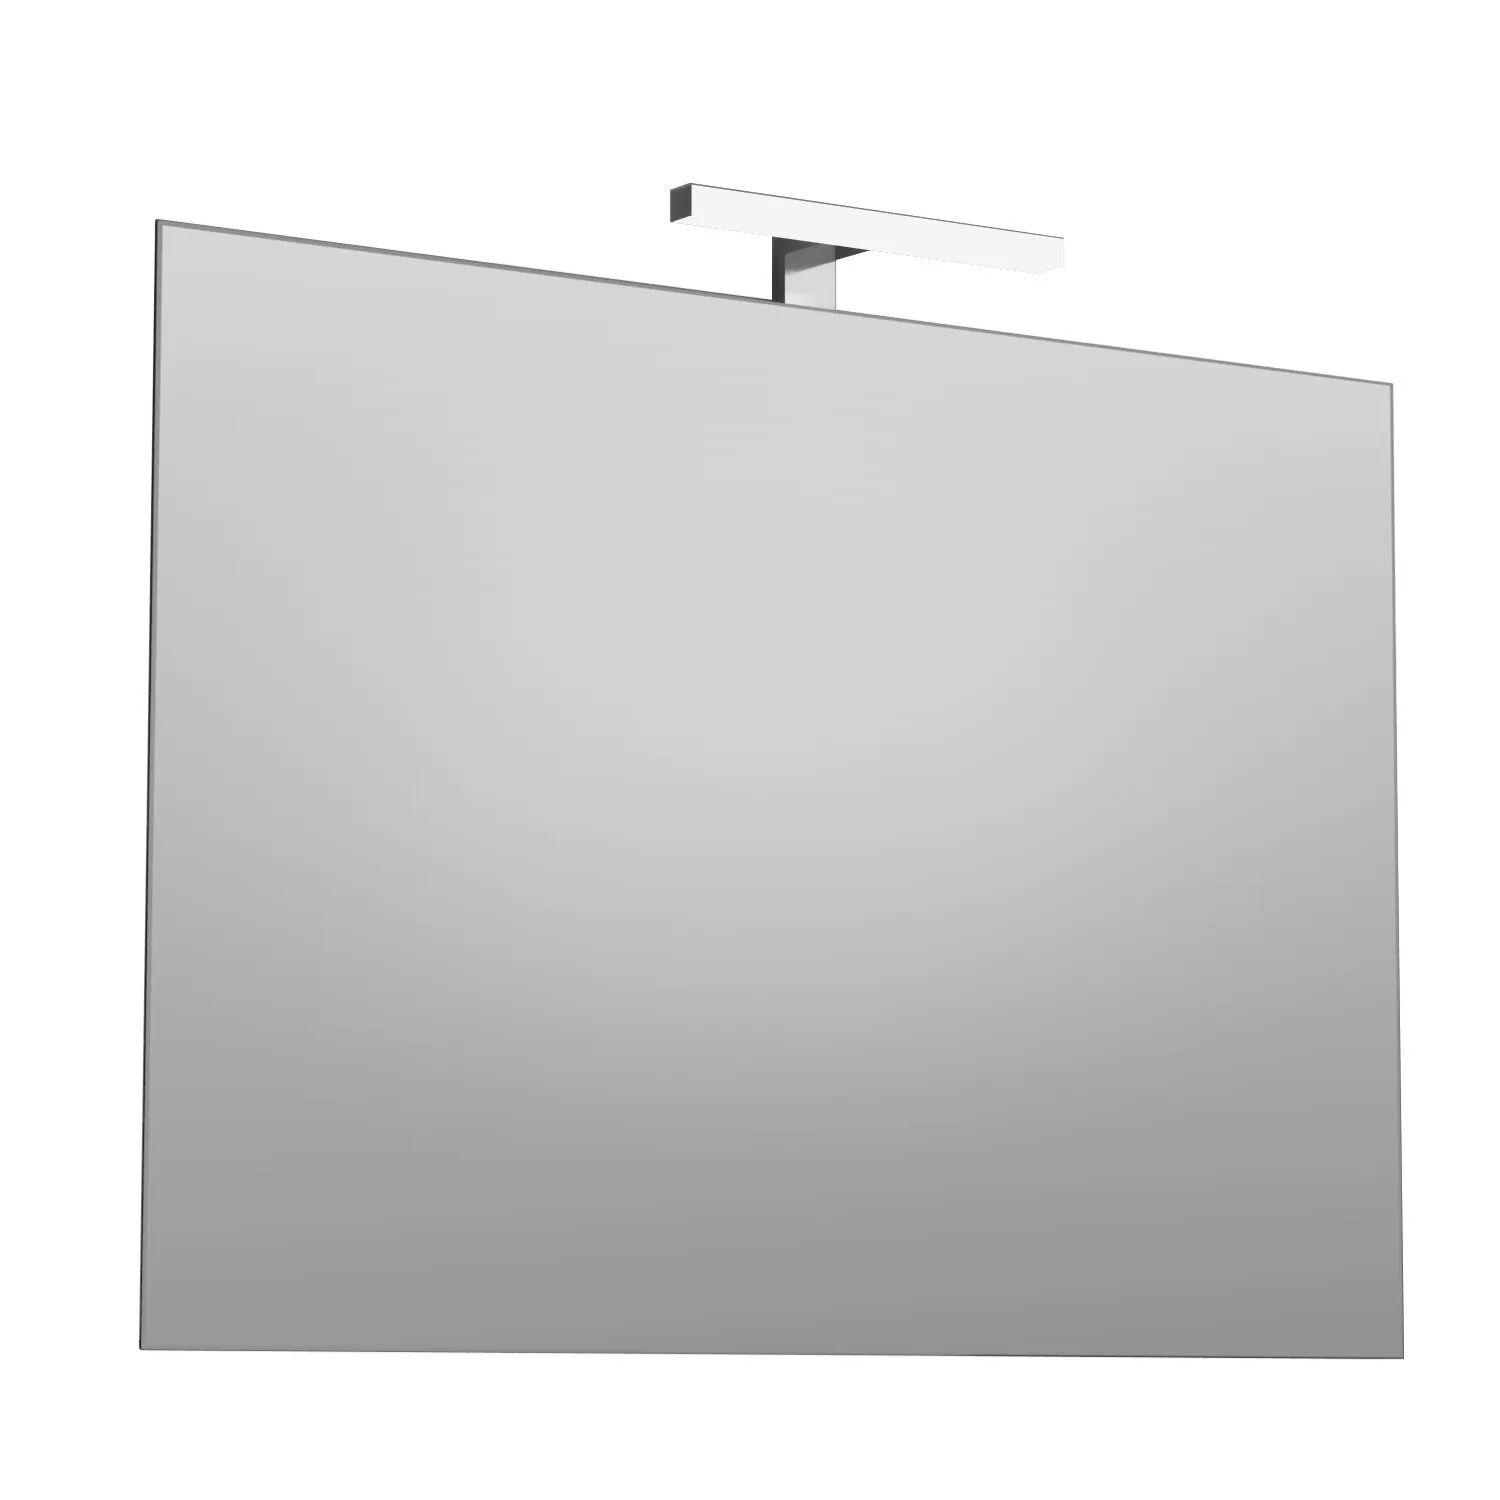 Specchio Next 70x100 Cm (Lxp) Filo Lucido Reversibile Lampada Led Luce Fredda 6 W